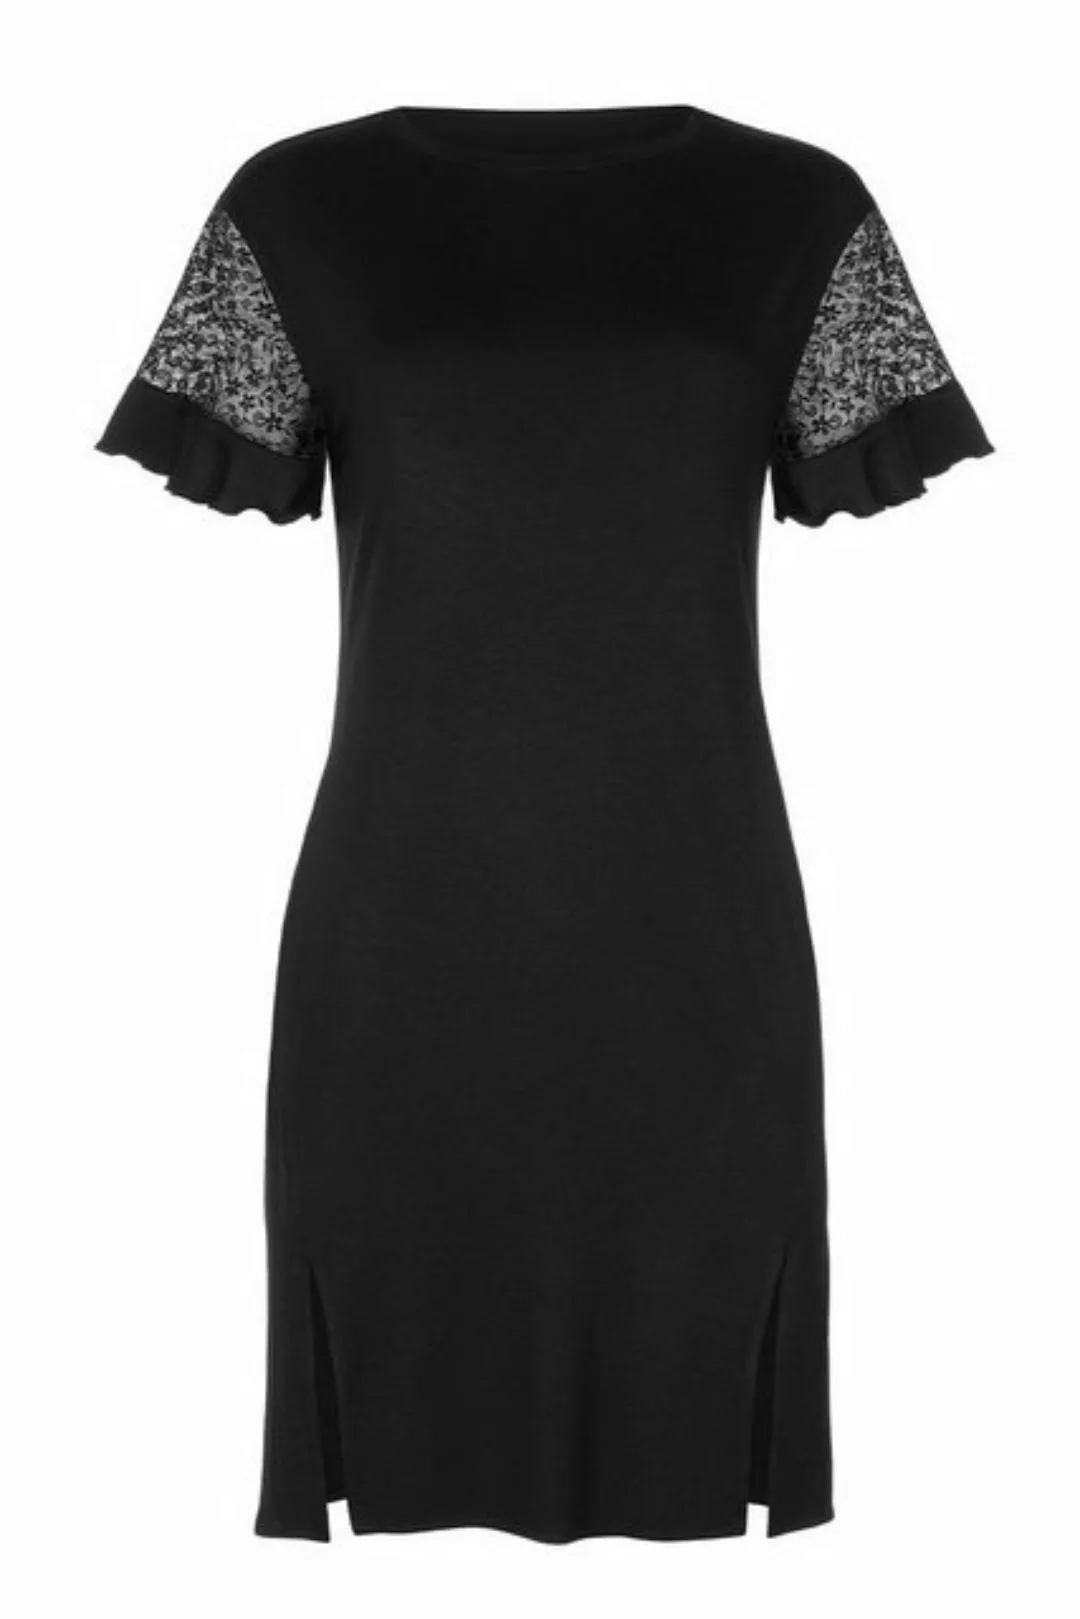 Cheek by Lisca Unterkleid Kleid 63454 günstig online kaufen